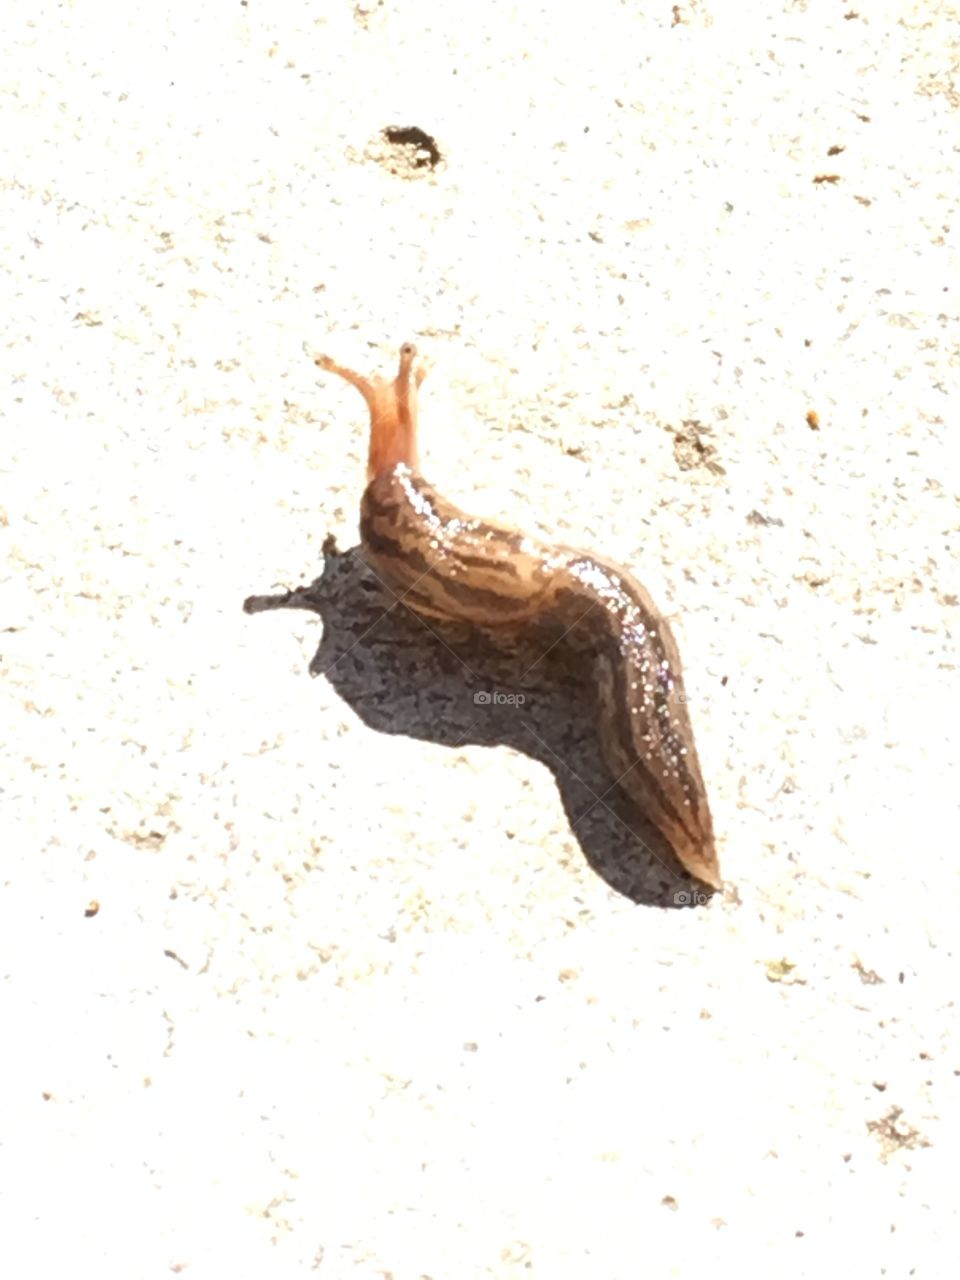 Baby slug